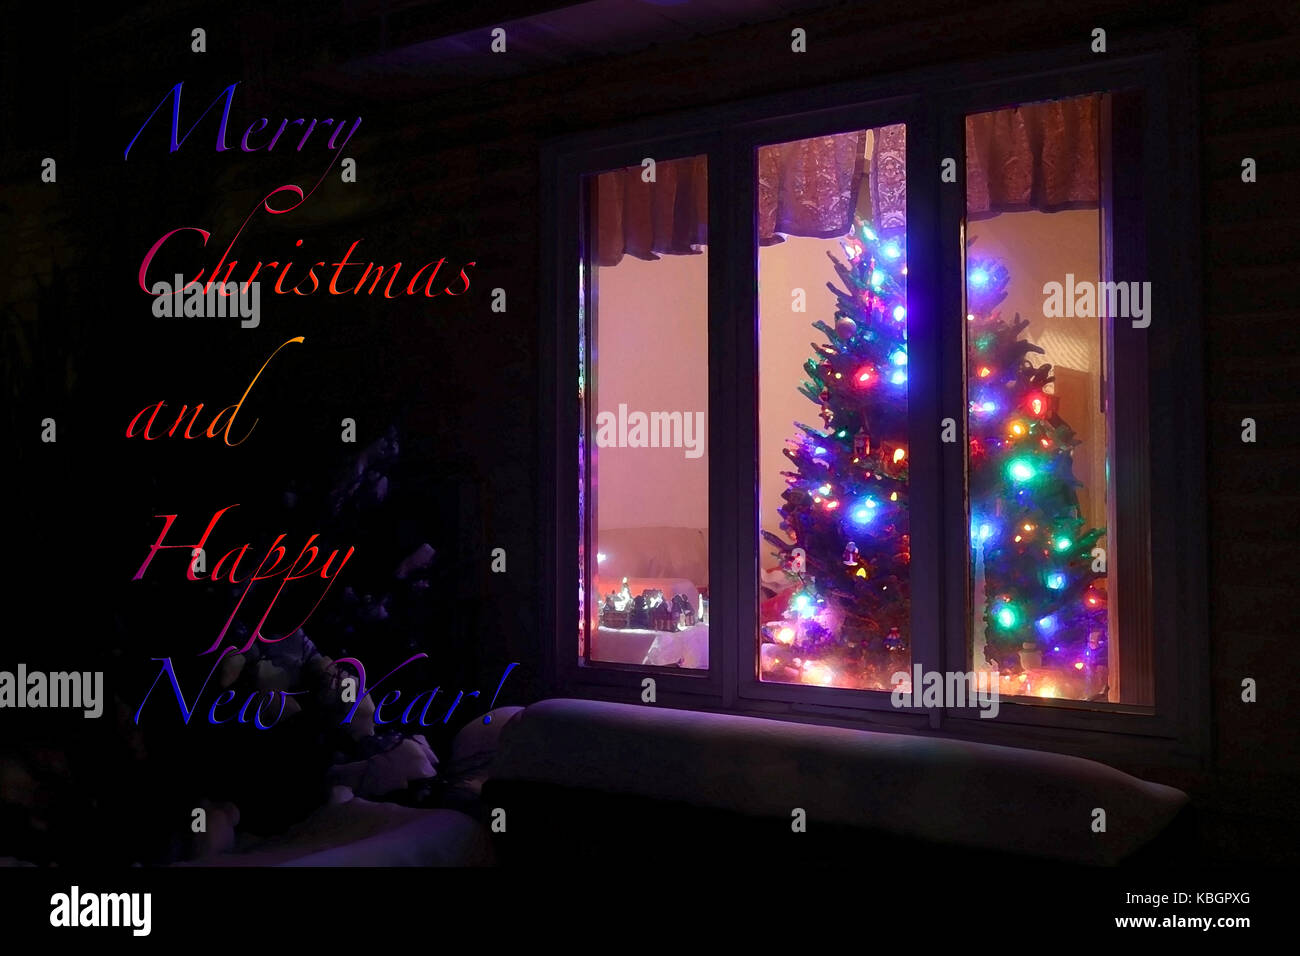 Saisonale urlaub Karte mit Willkommen zu Hause leuchtenden Weihnachtsbaum in einem Fenster auf einem schwarzen Hintergrund, Nacht. Stockfoto